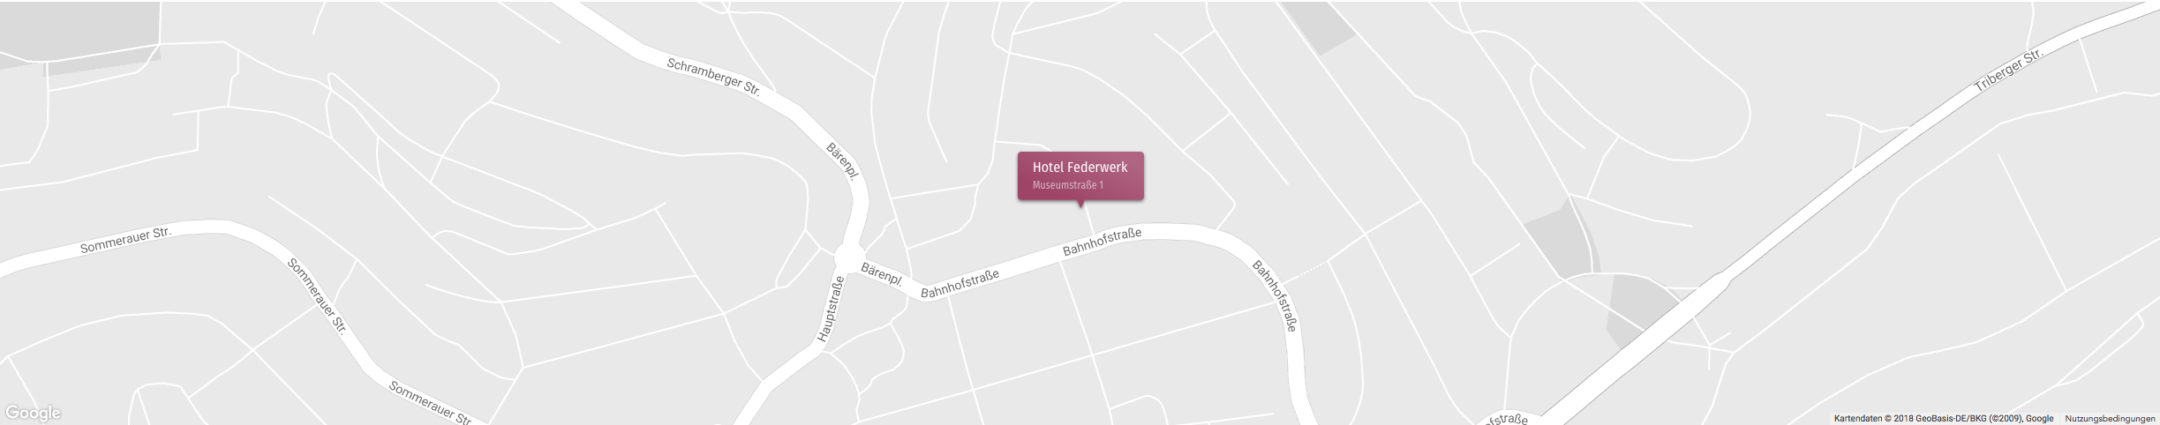 Skizzenhafte Straßenkarte mit Lageplan des Hotel Federwerk